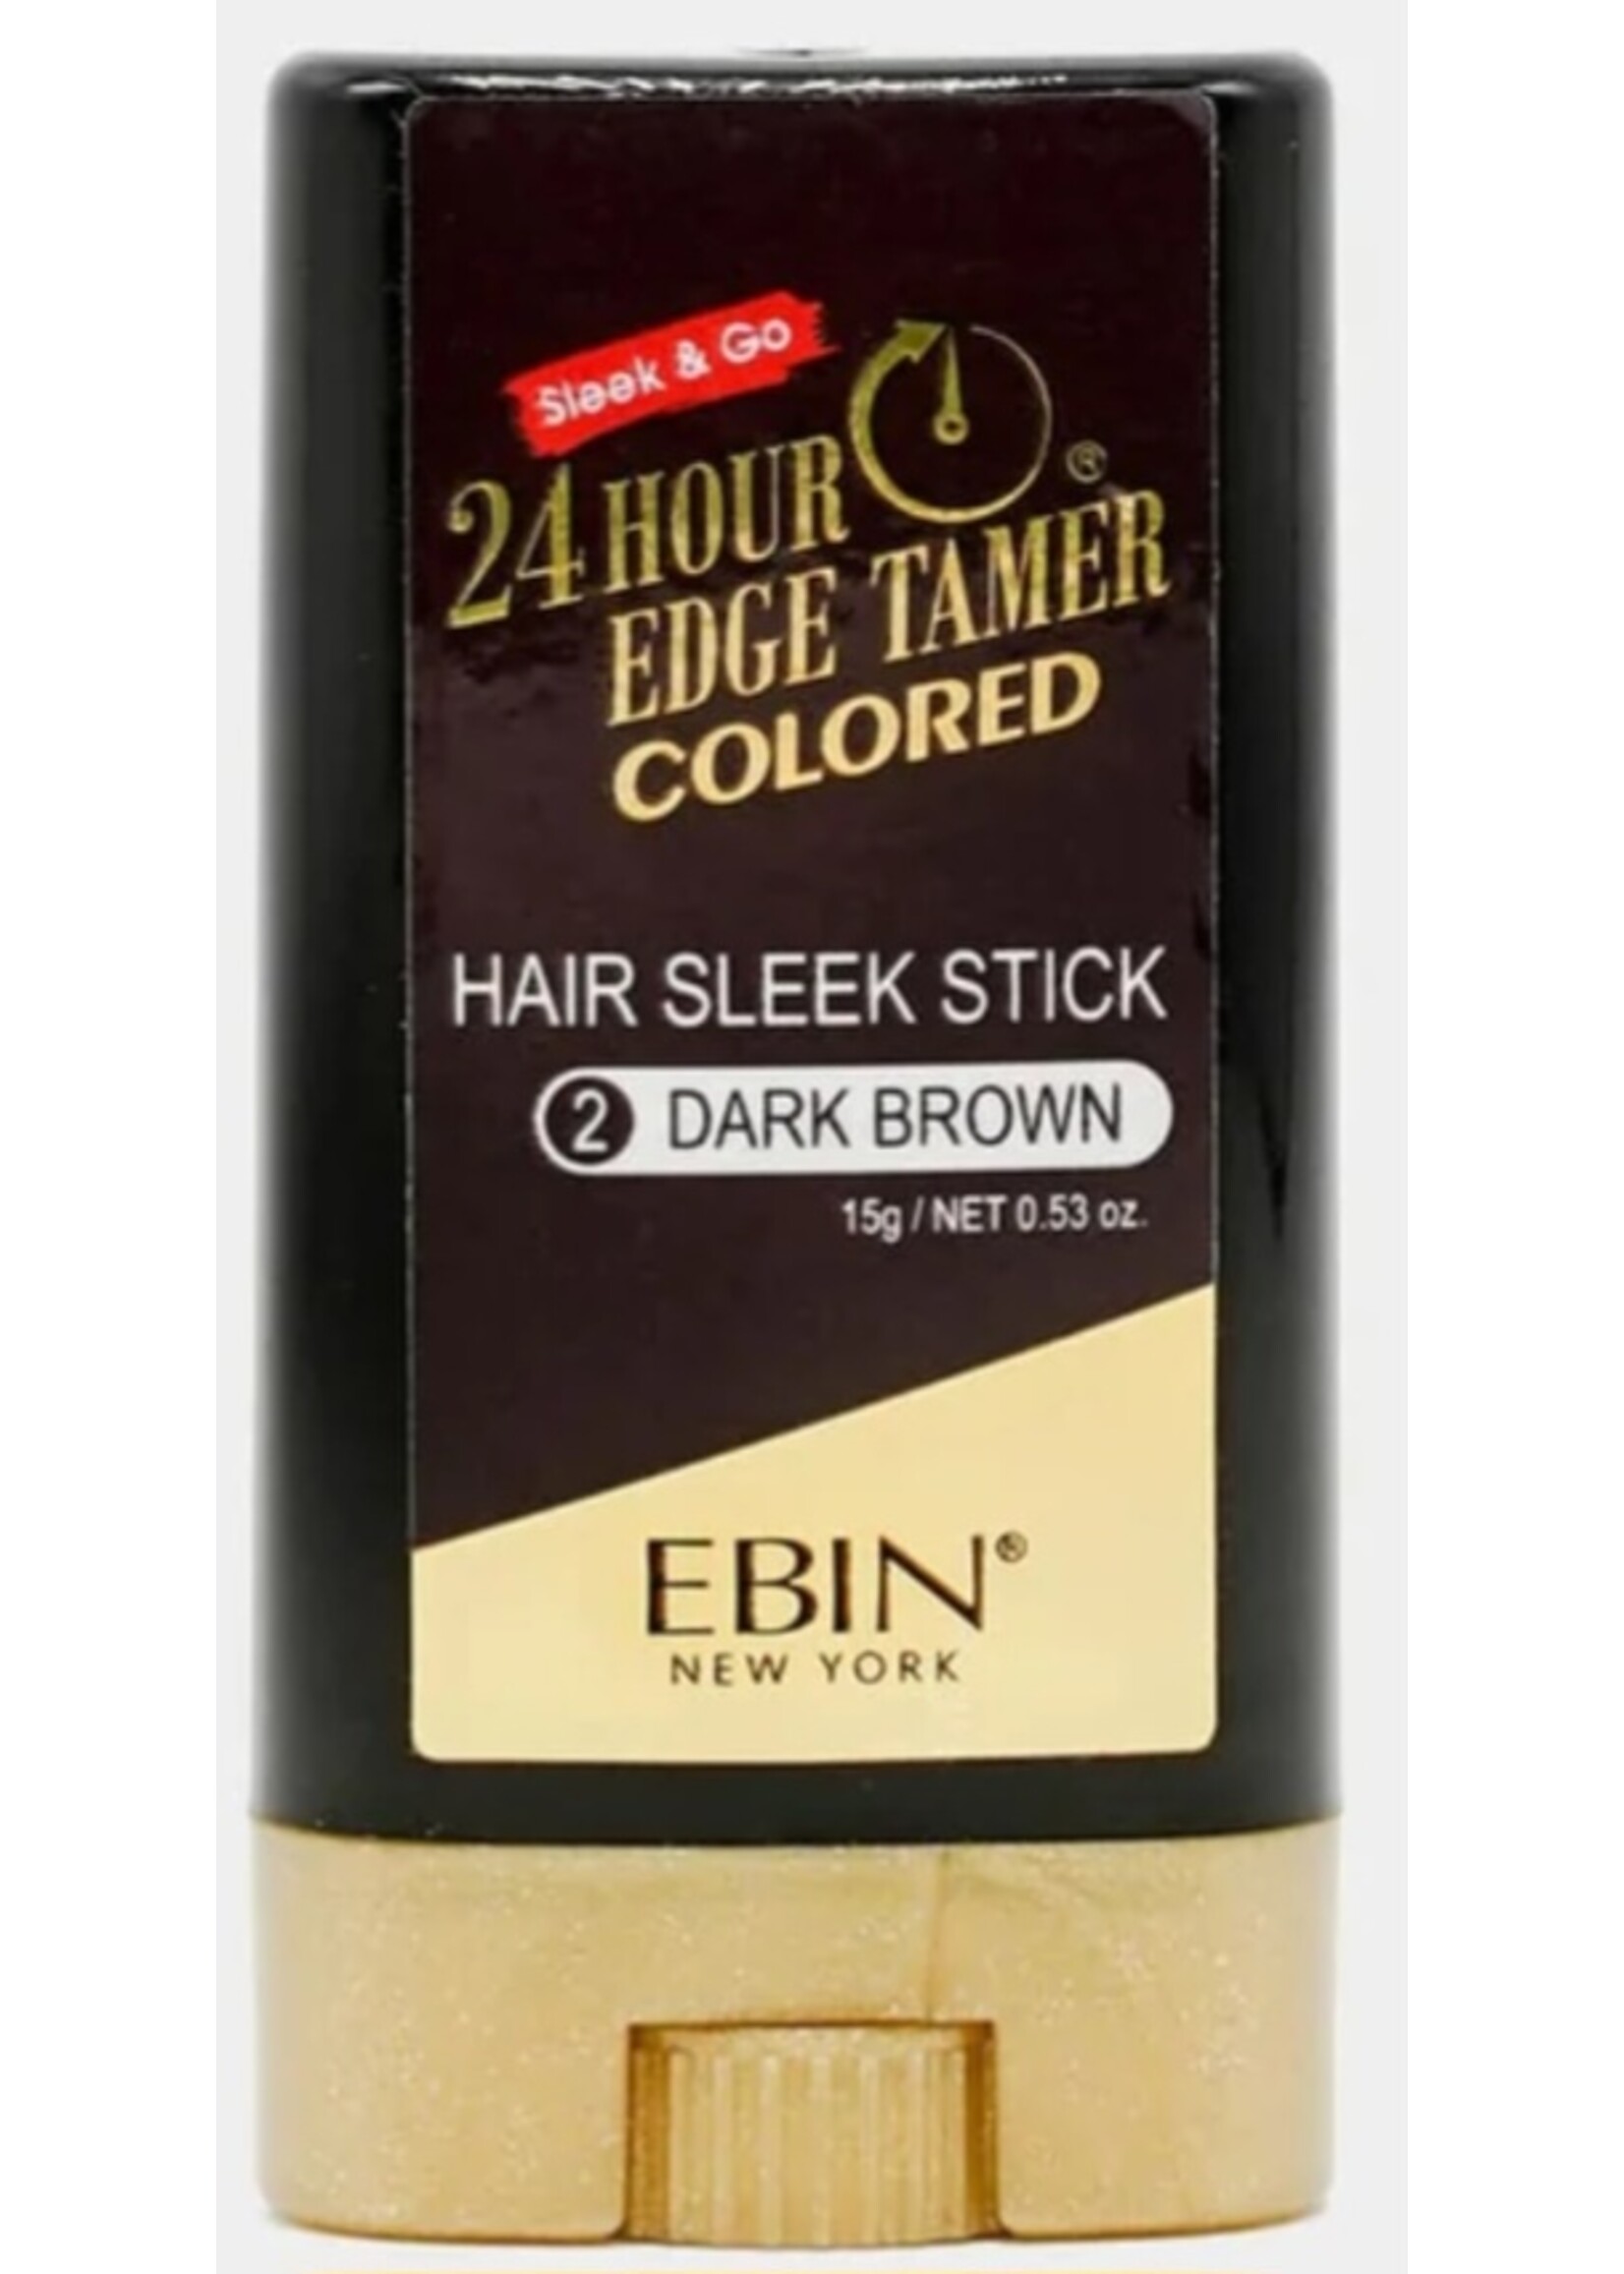 Ebin Ebin Colored Stick Edge